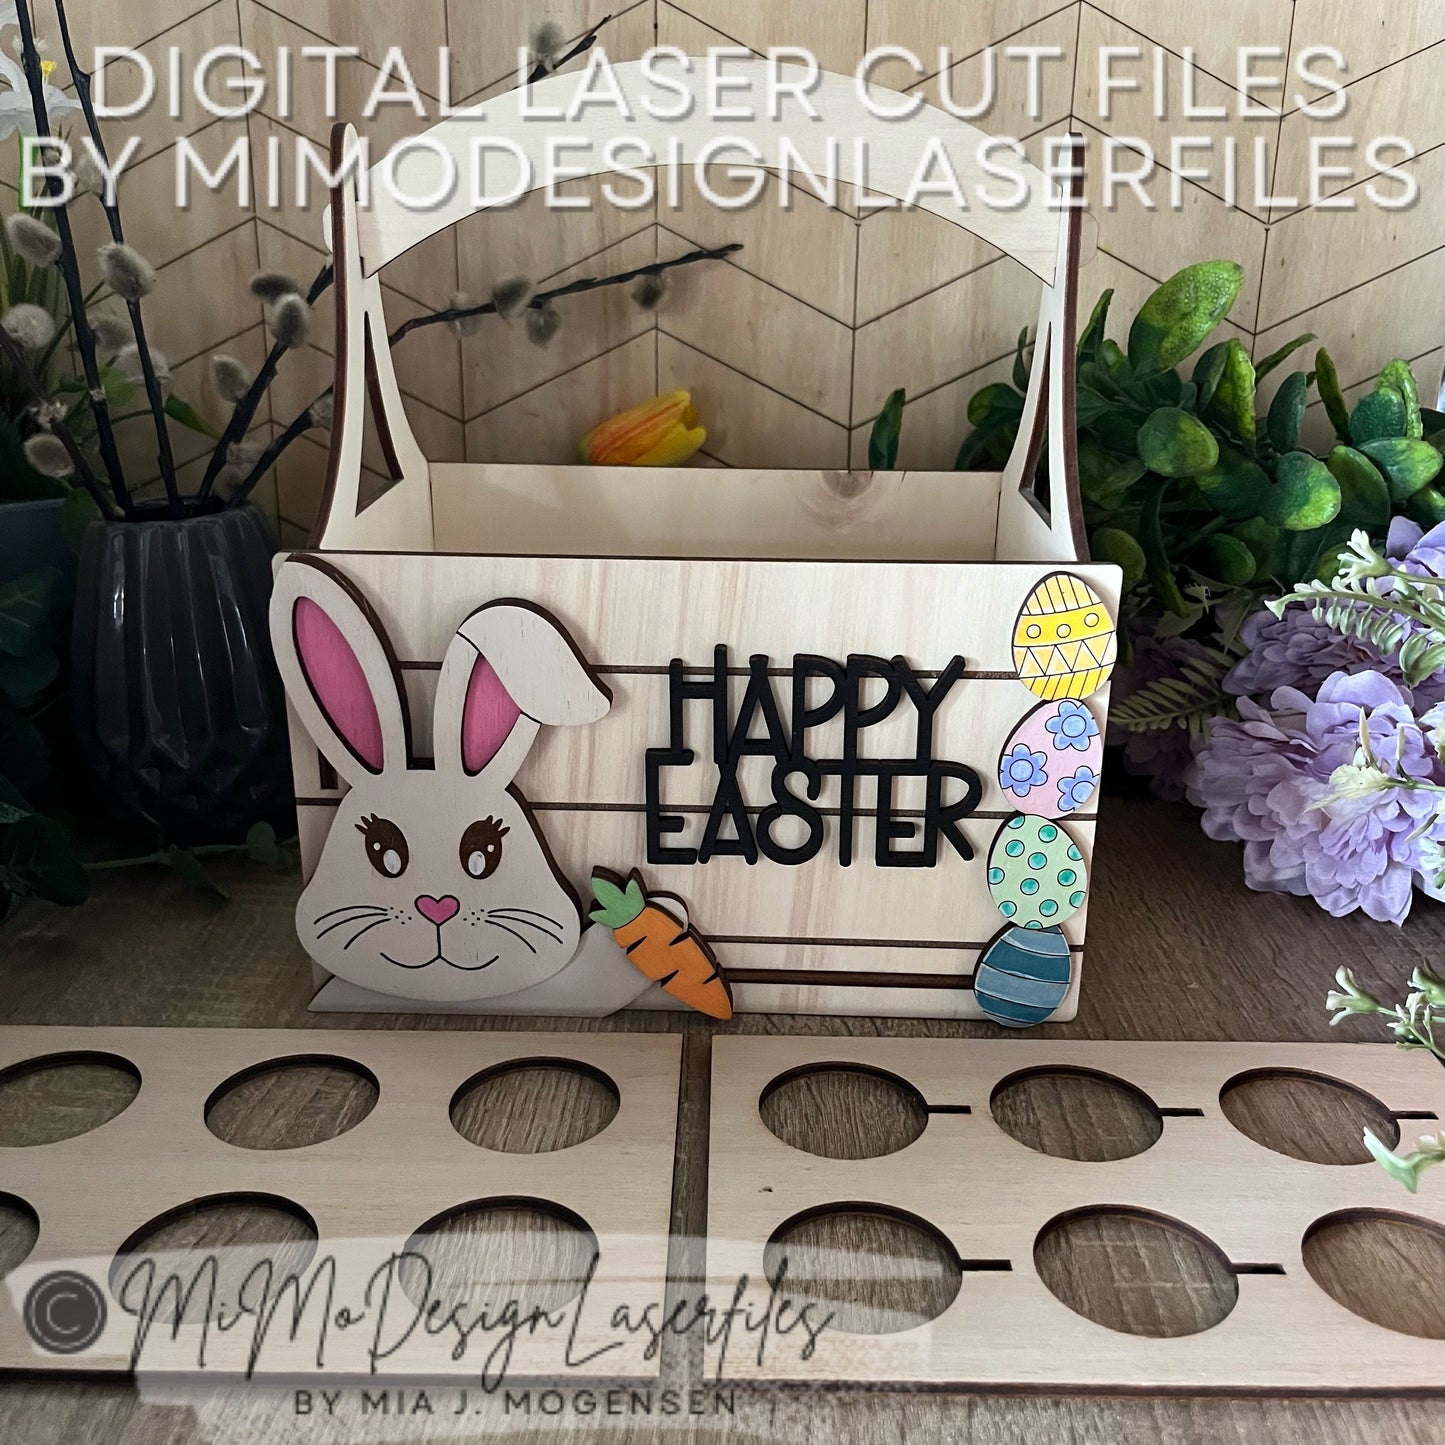 3D Easter Bunny 3in1 Basket for gifts, Kinder Joy and regular chocolate eggs - Versatile Design